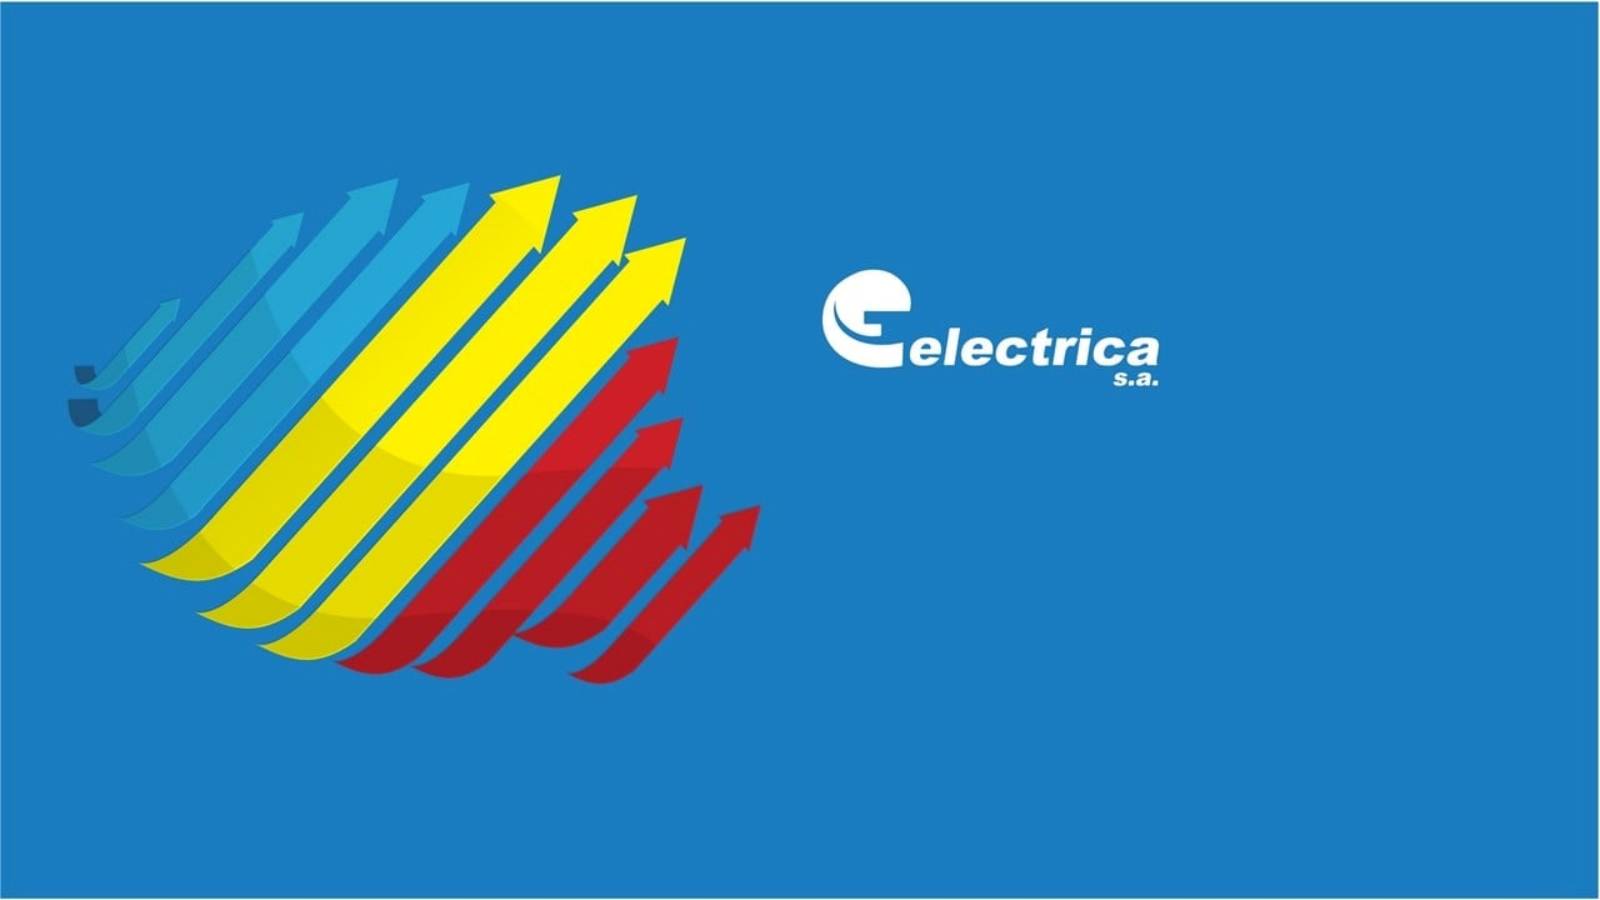 Electrica Requerimiento Oficial ÚLTIMA HORA Información IMPORTANTE Clientes rumanos